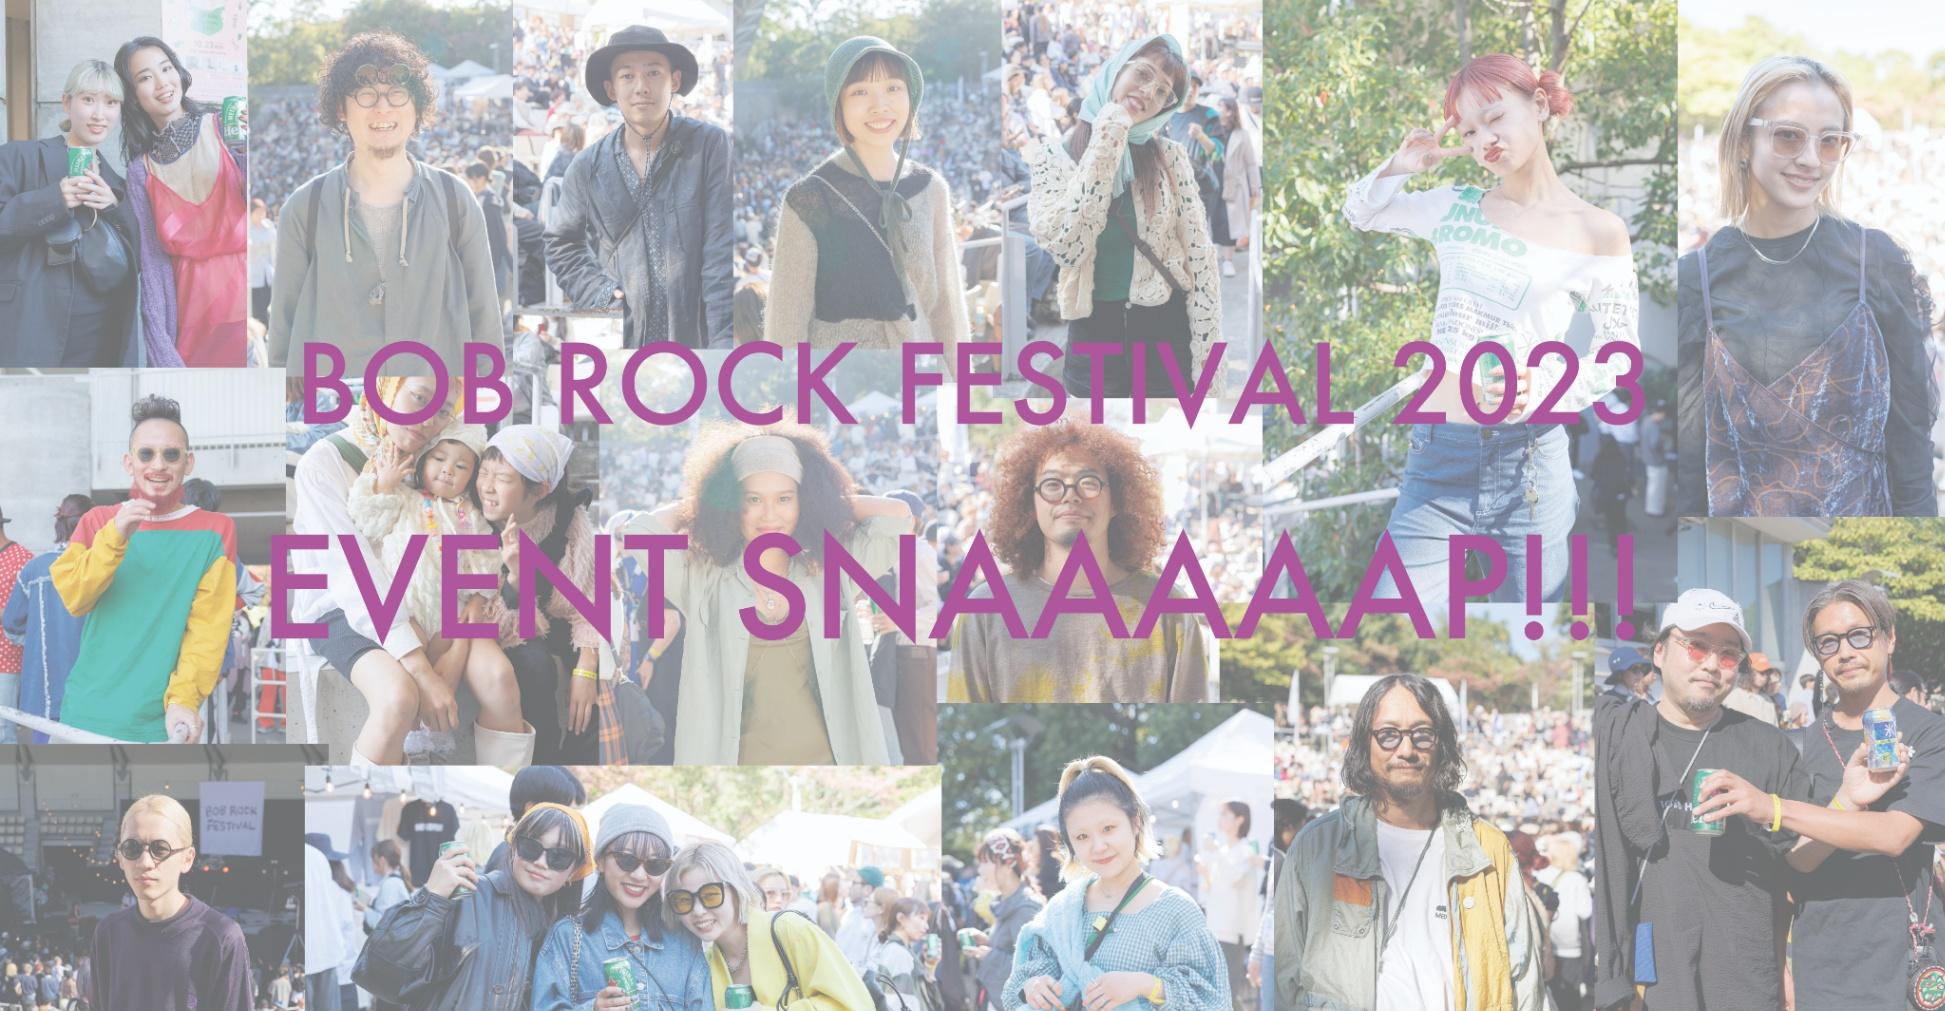 EVENT SNAAAAAP!!! 【BOB ROCK FESTIVAL 2023編 part.3】